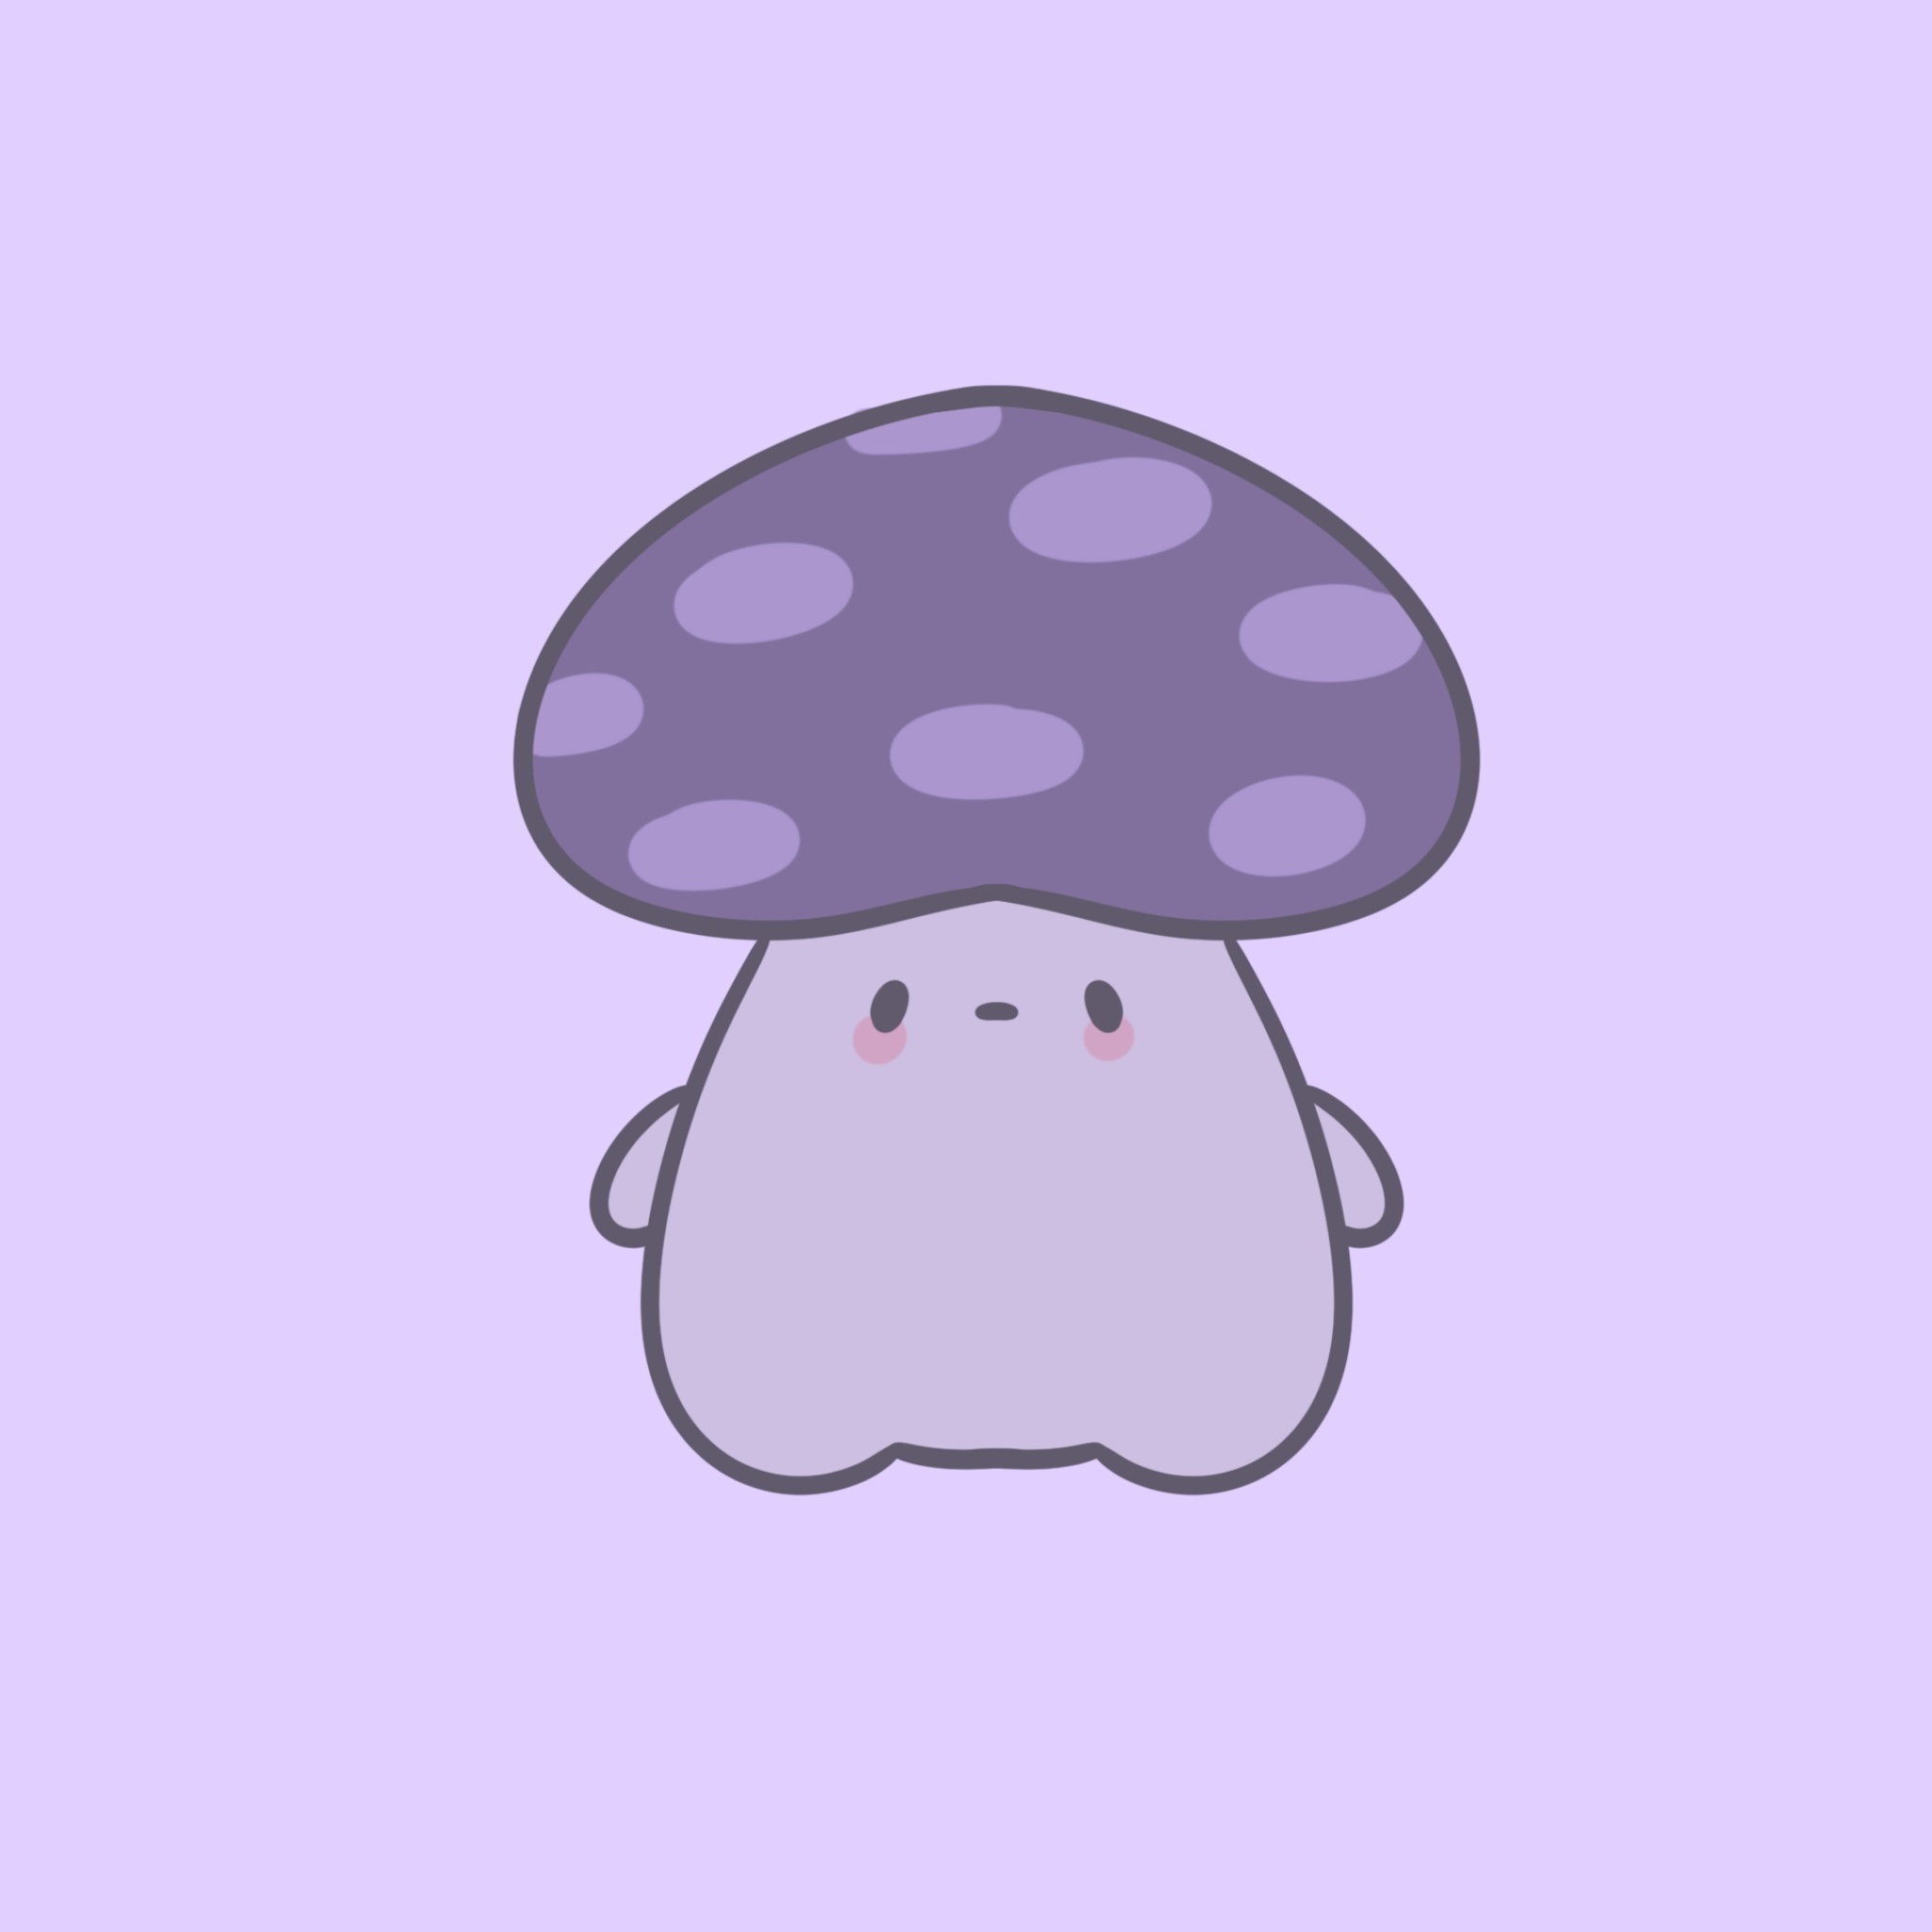 grumpy mushroom 🍄